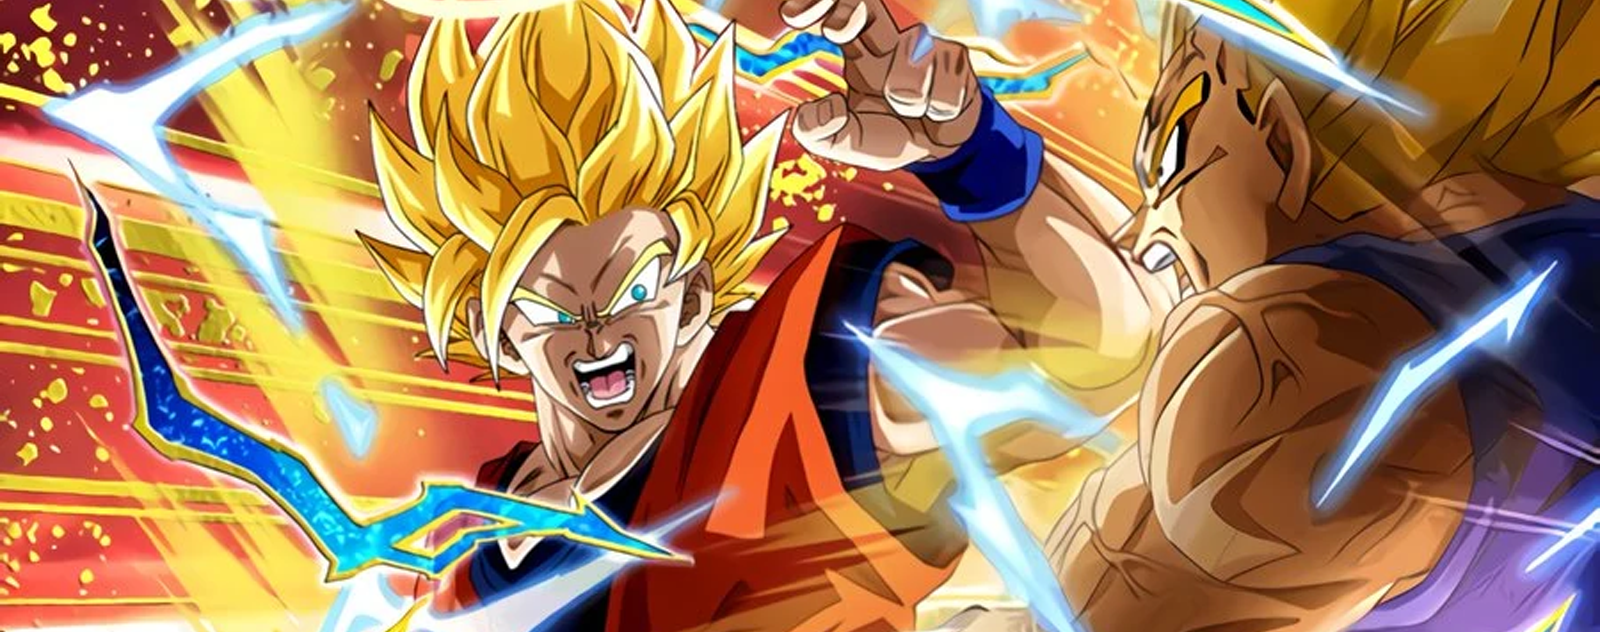 Goku Super Saiyajin 2